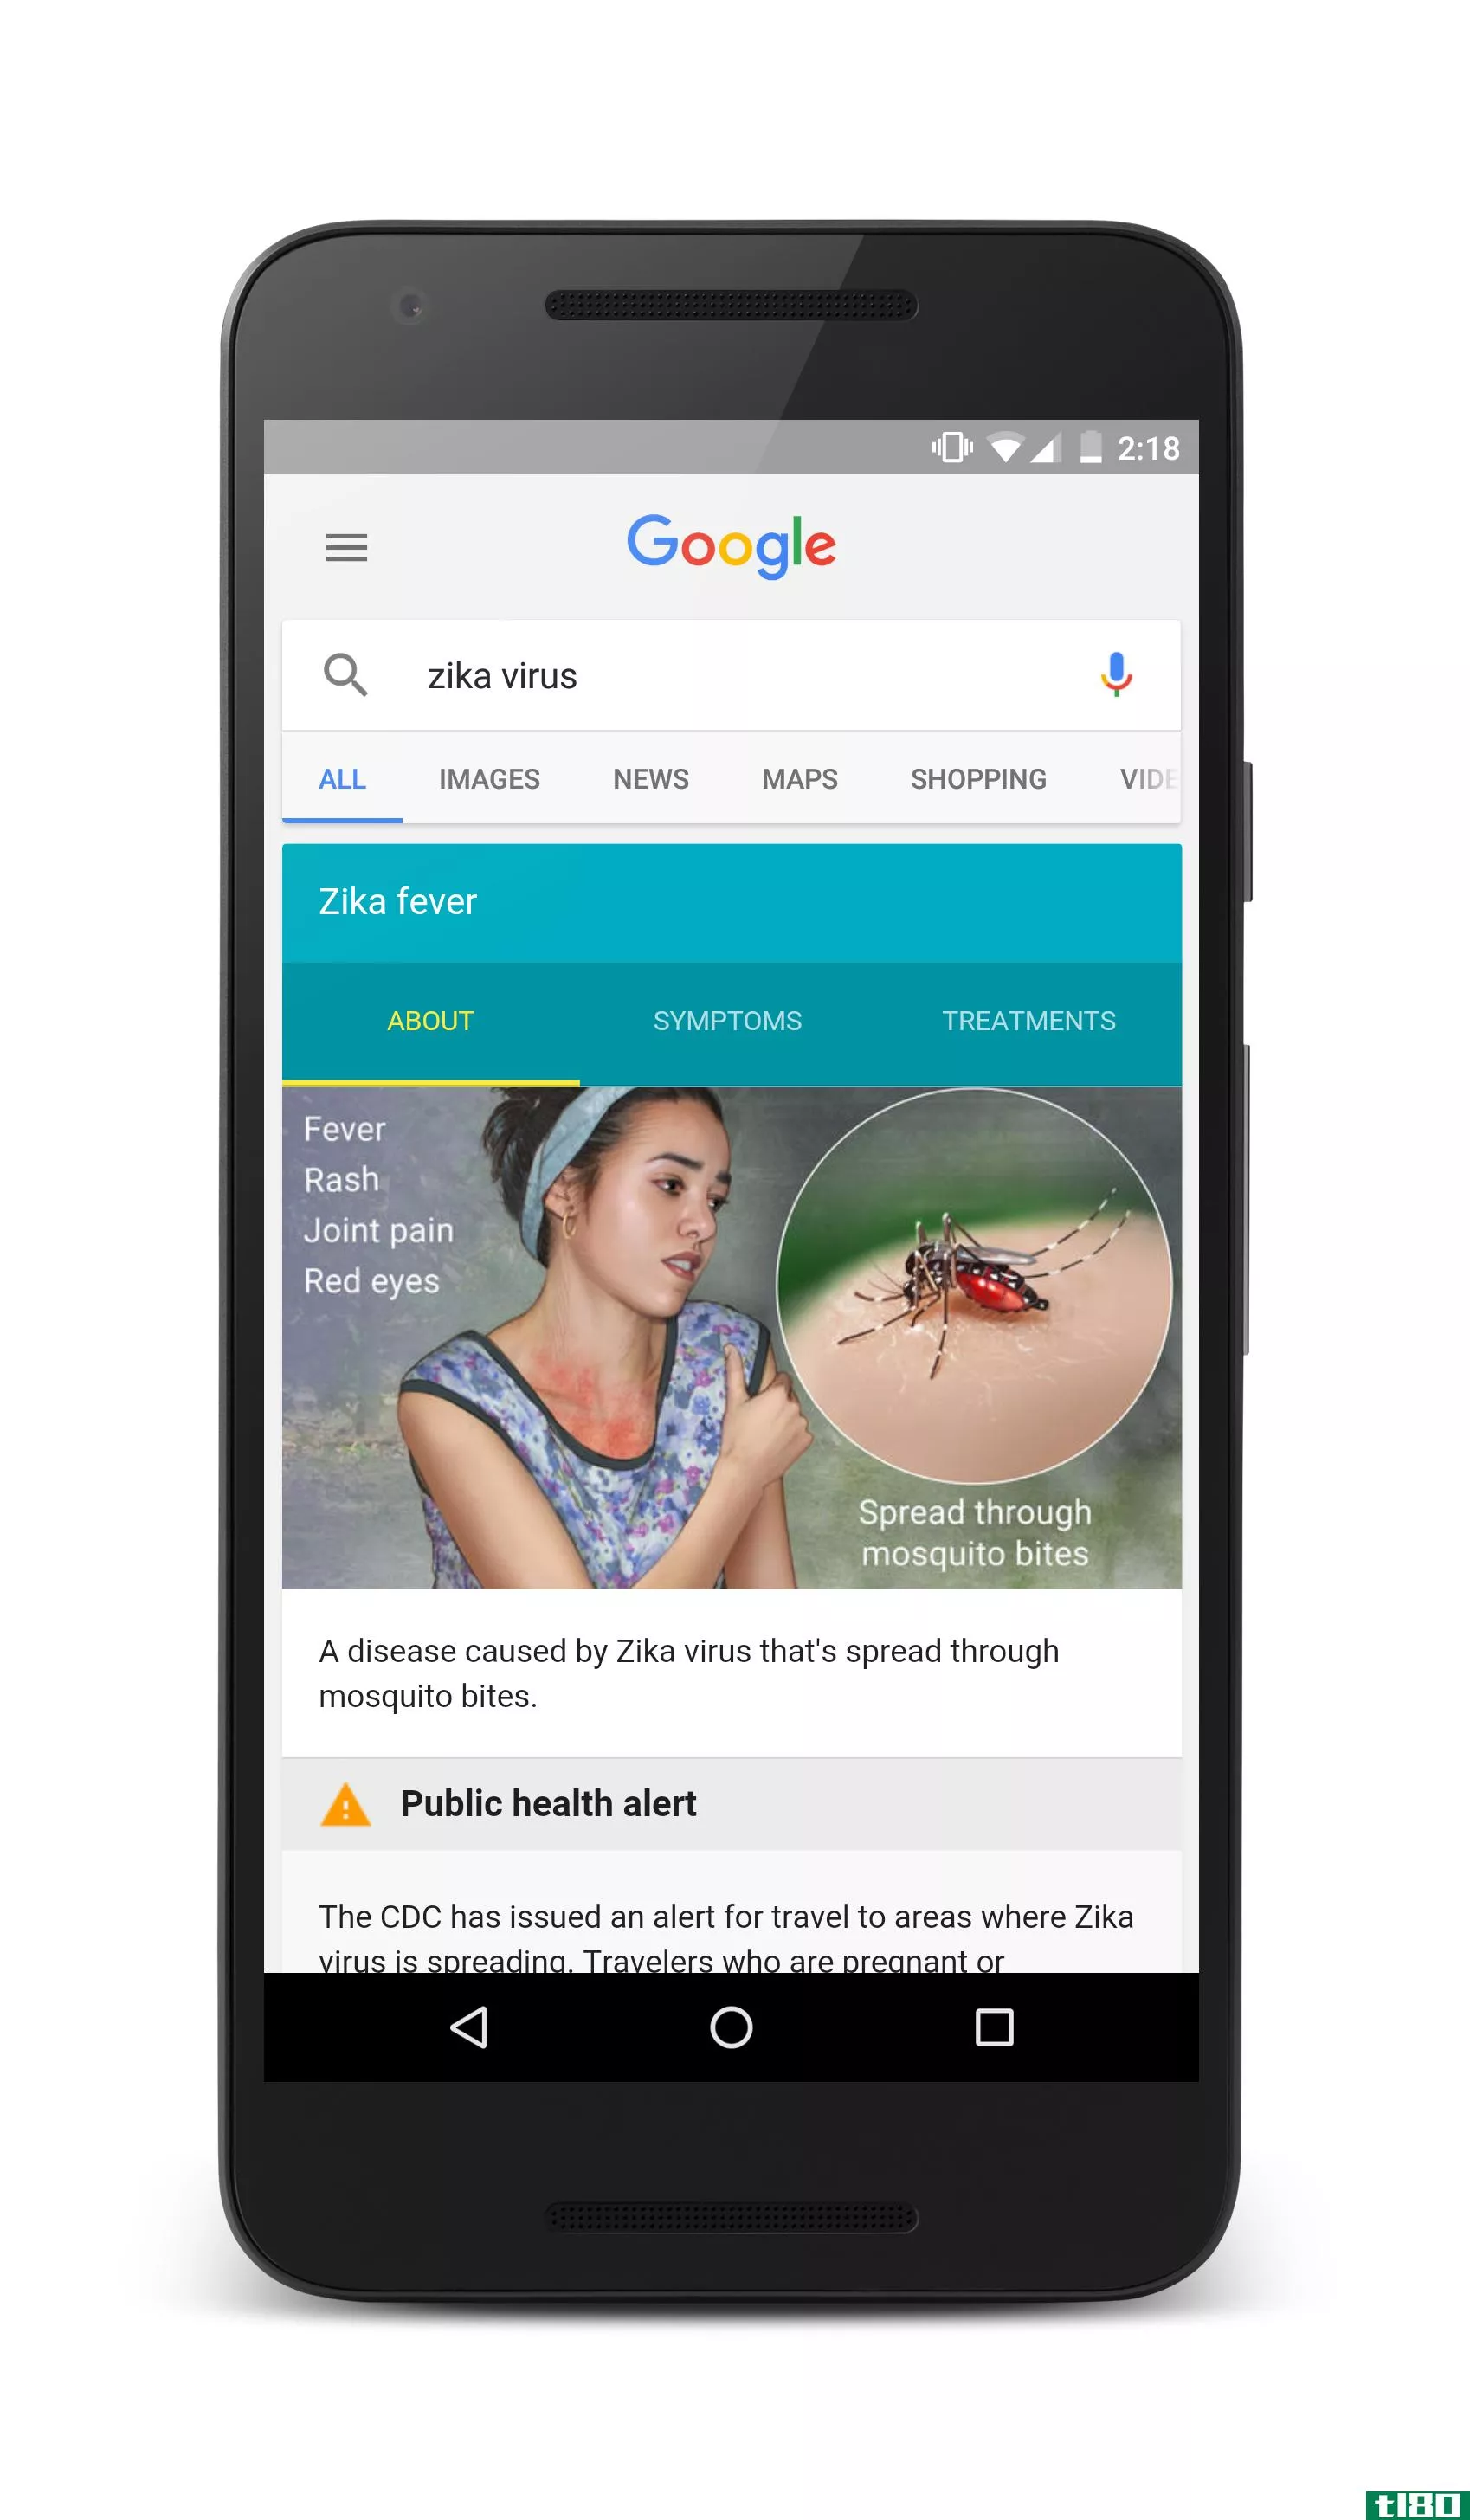 谷歌通过扩大搜索结果和地图工具打击寨卡病毒